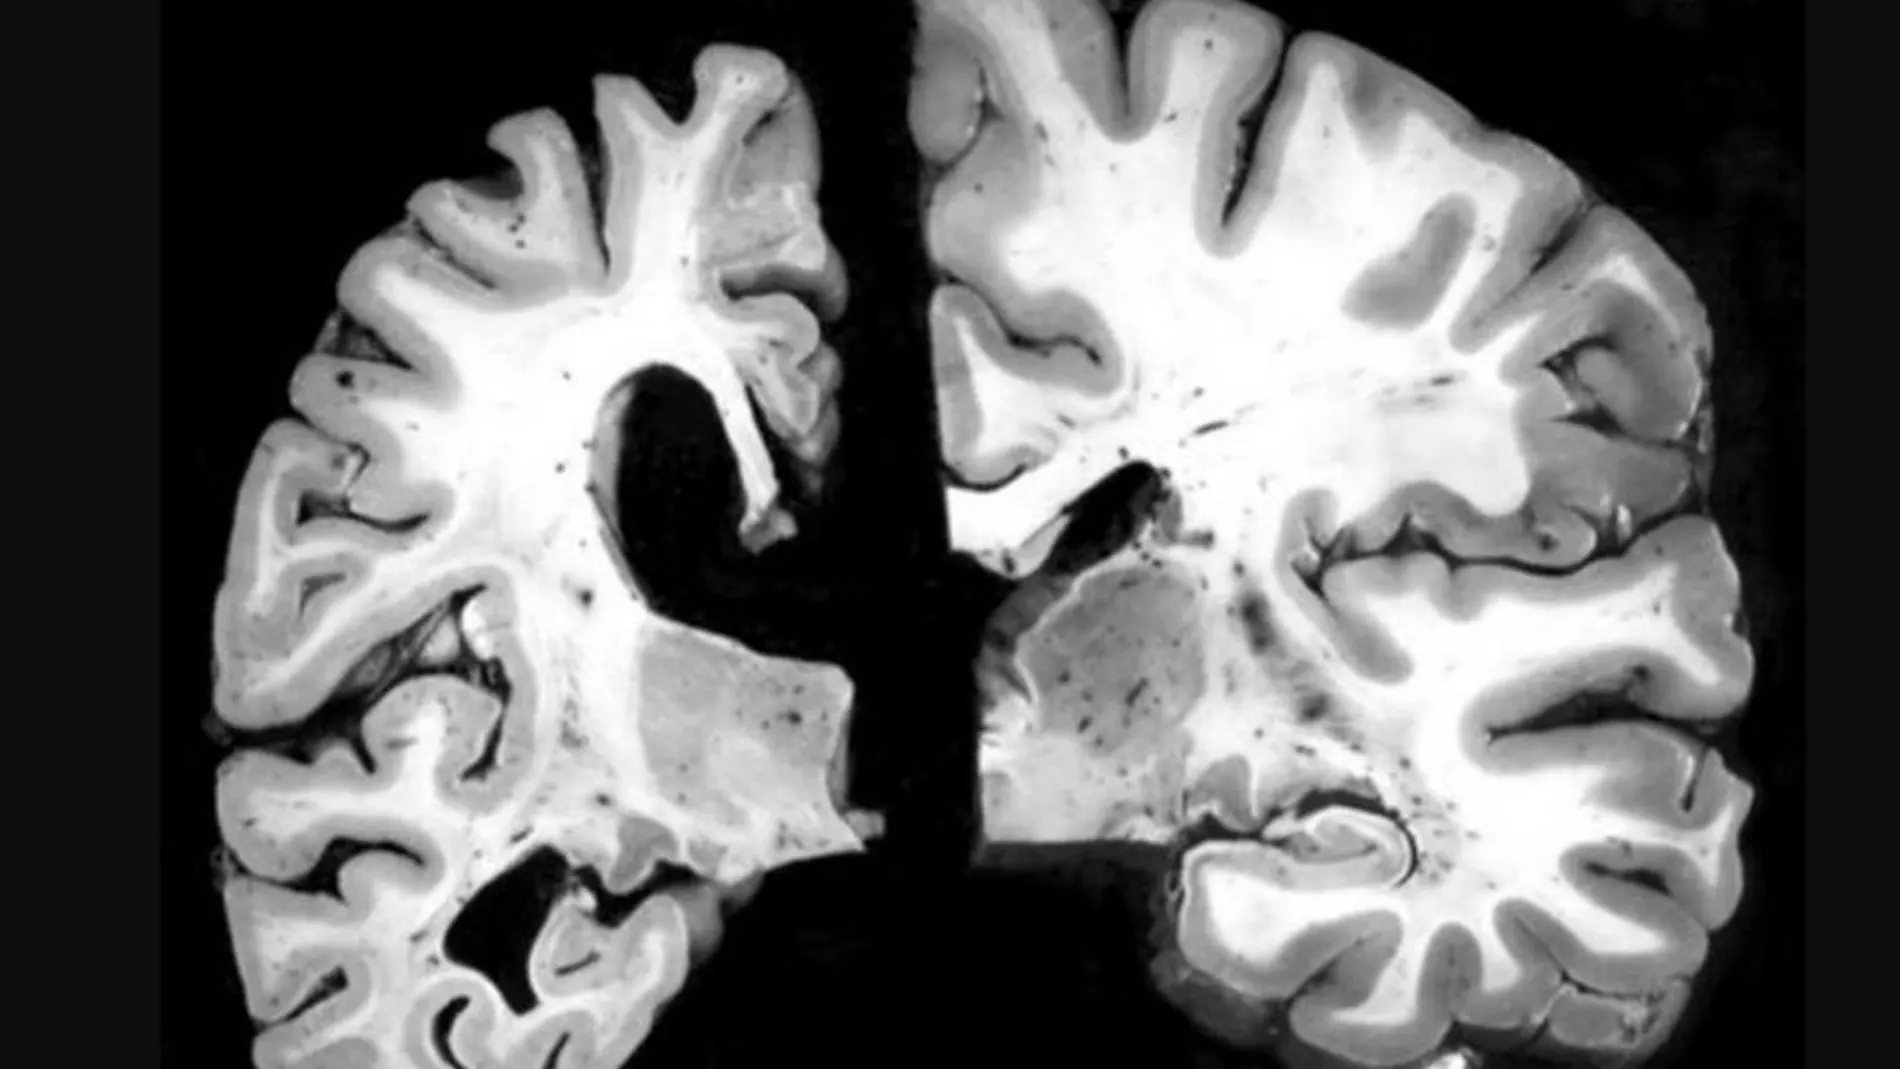 A la izquierda, un cerebro con alzheimer. A la derecha, uno sin esta enfermedad